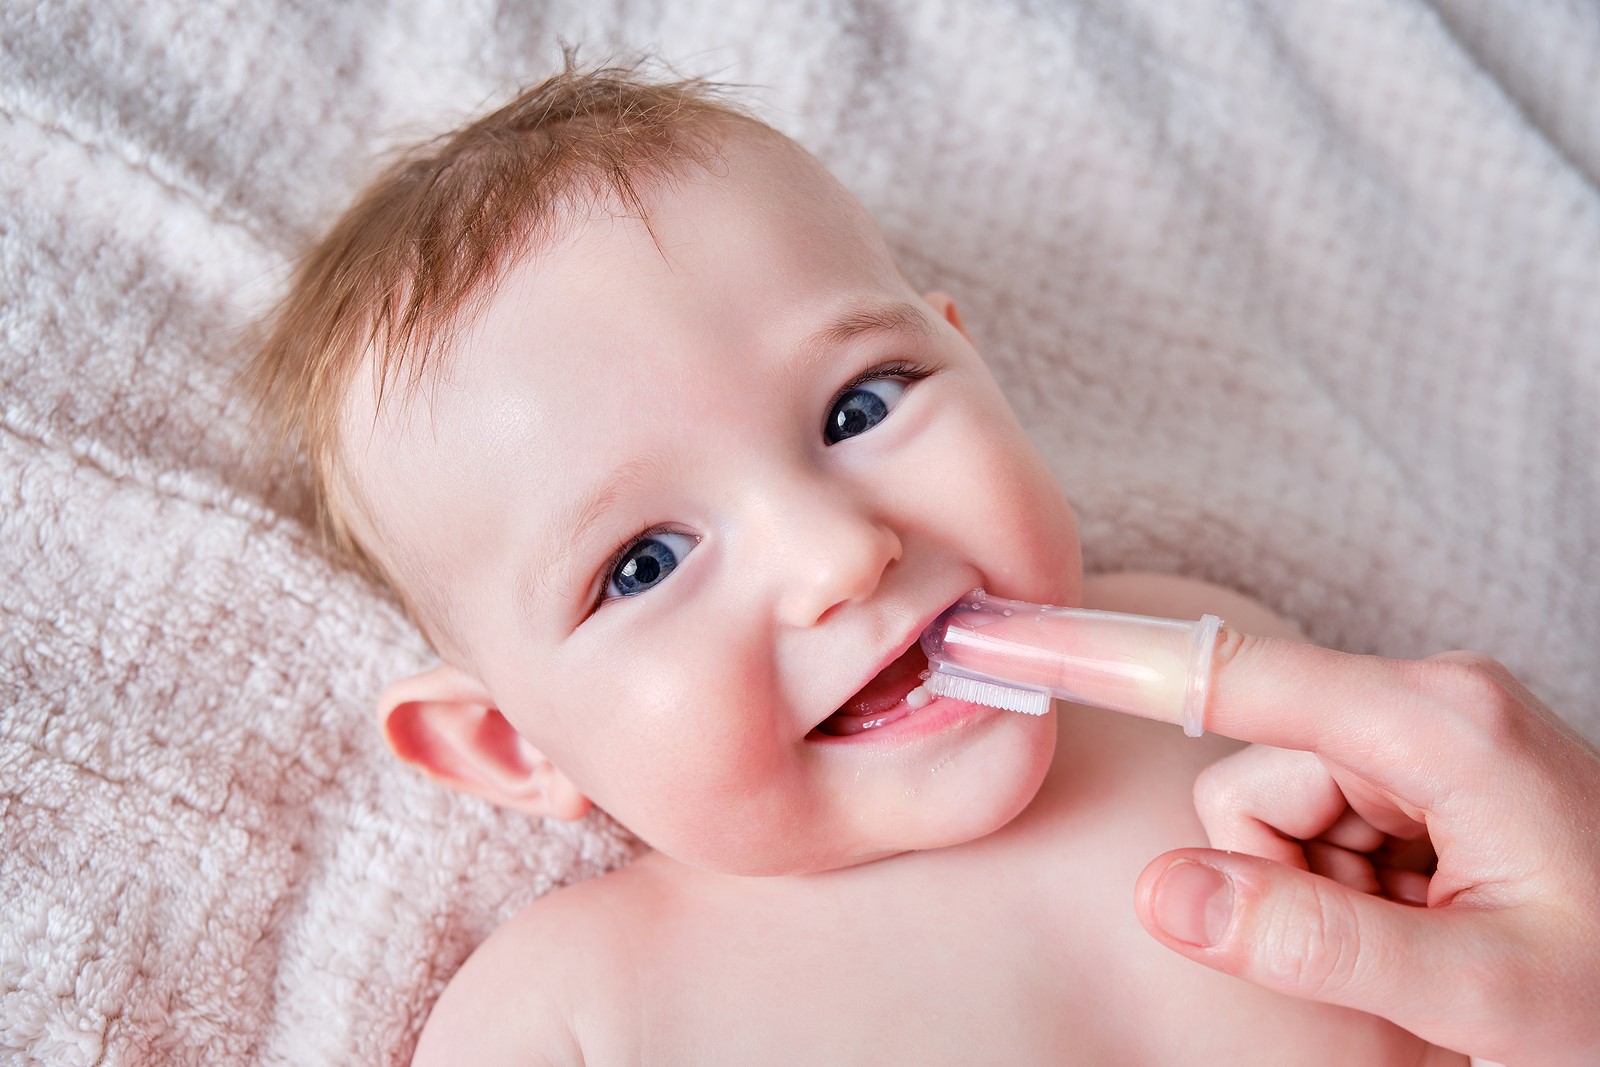 Baby Tooth Brushing